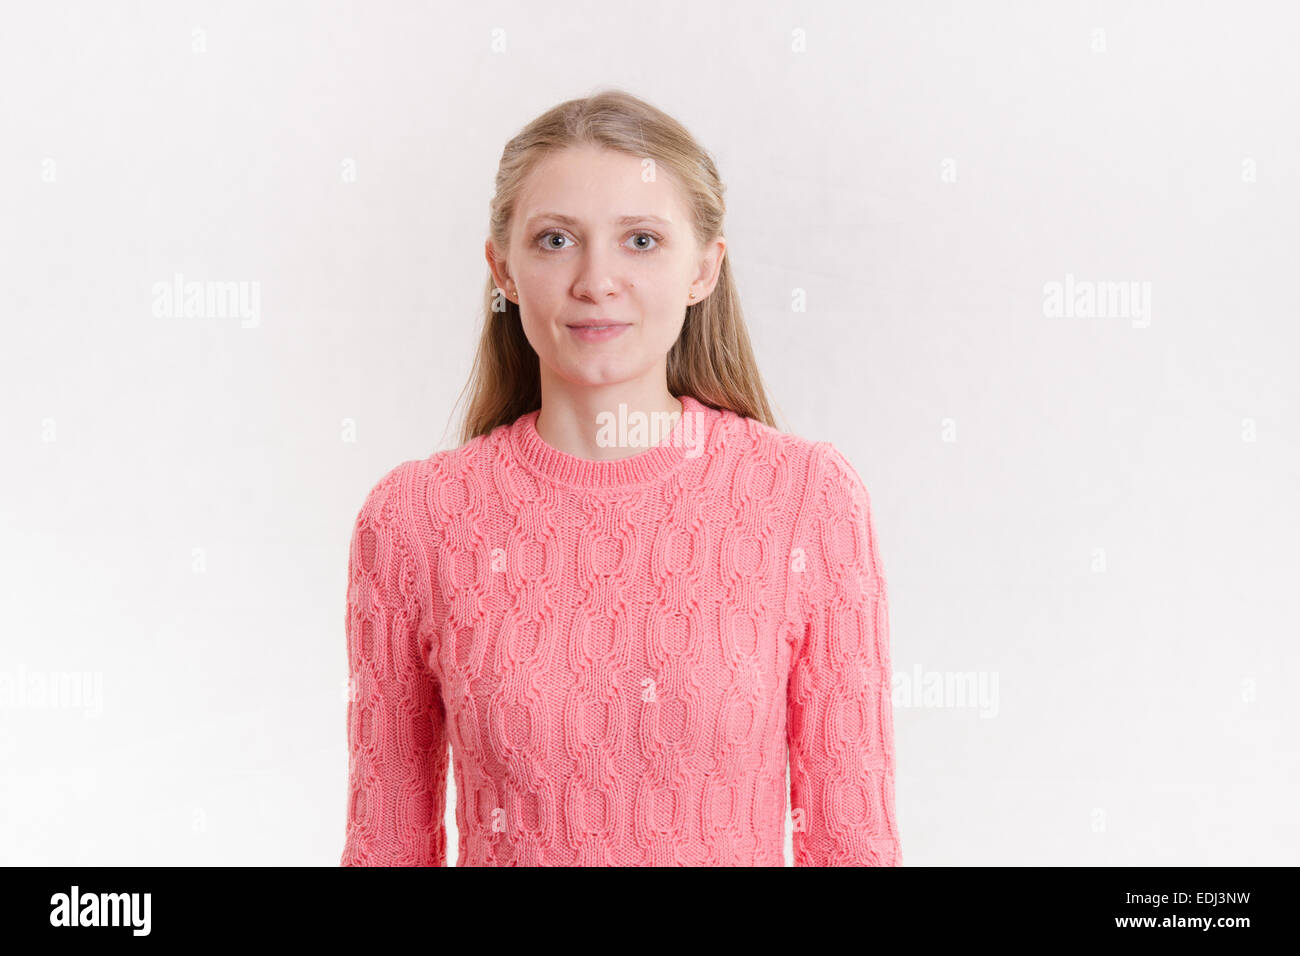 Porträt eines jungen emotionale schönen Mädchens der Europäischen Erscheinung auf weißem Hintergrund Stockfoto